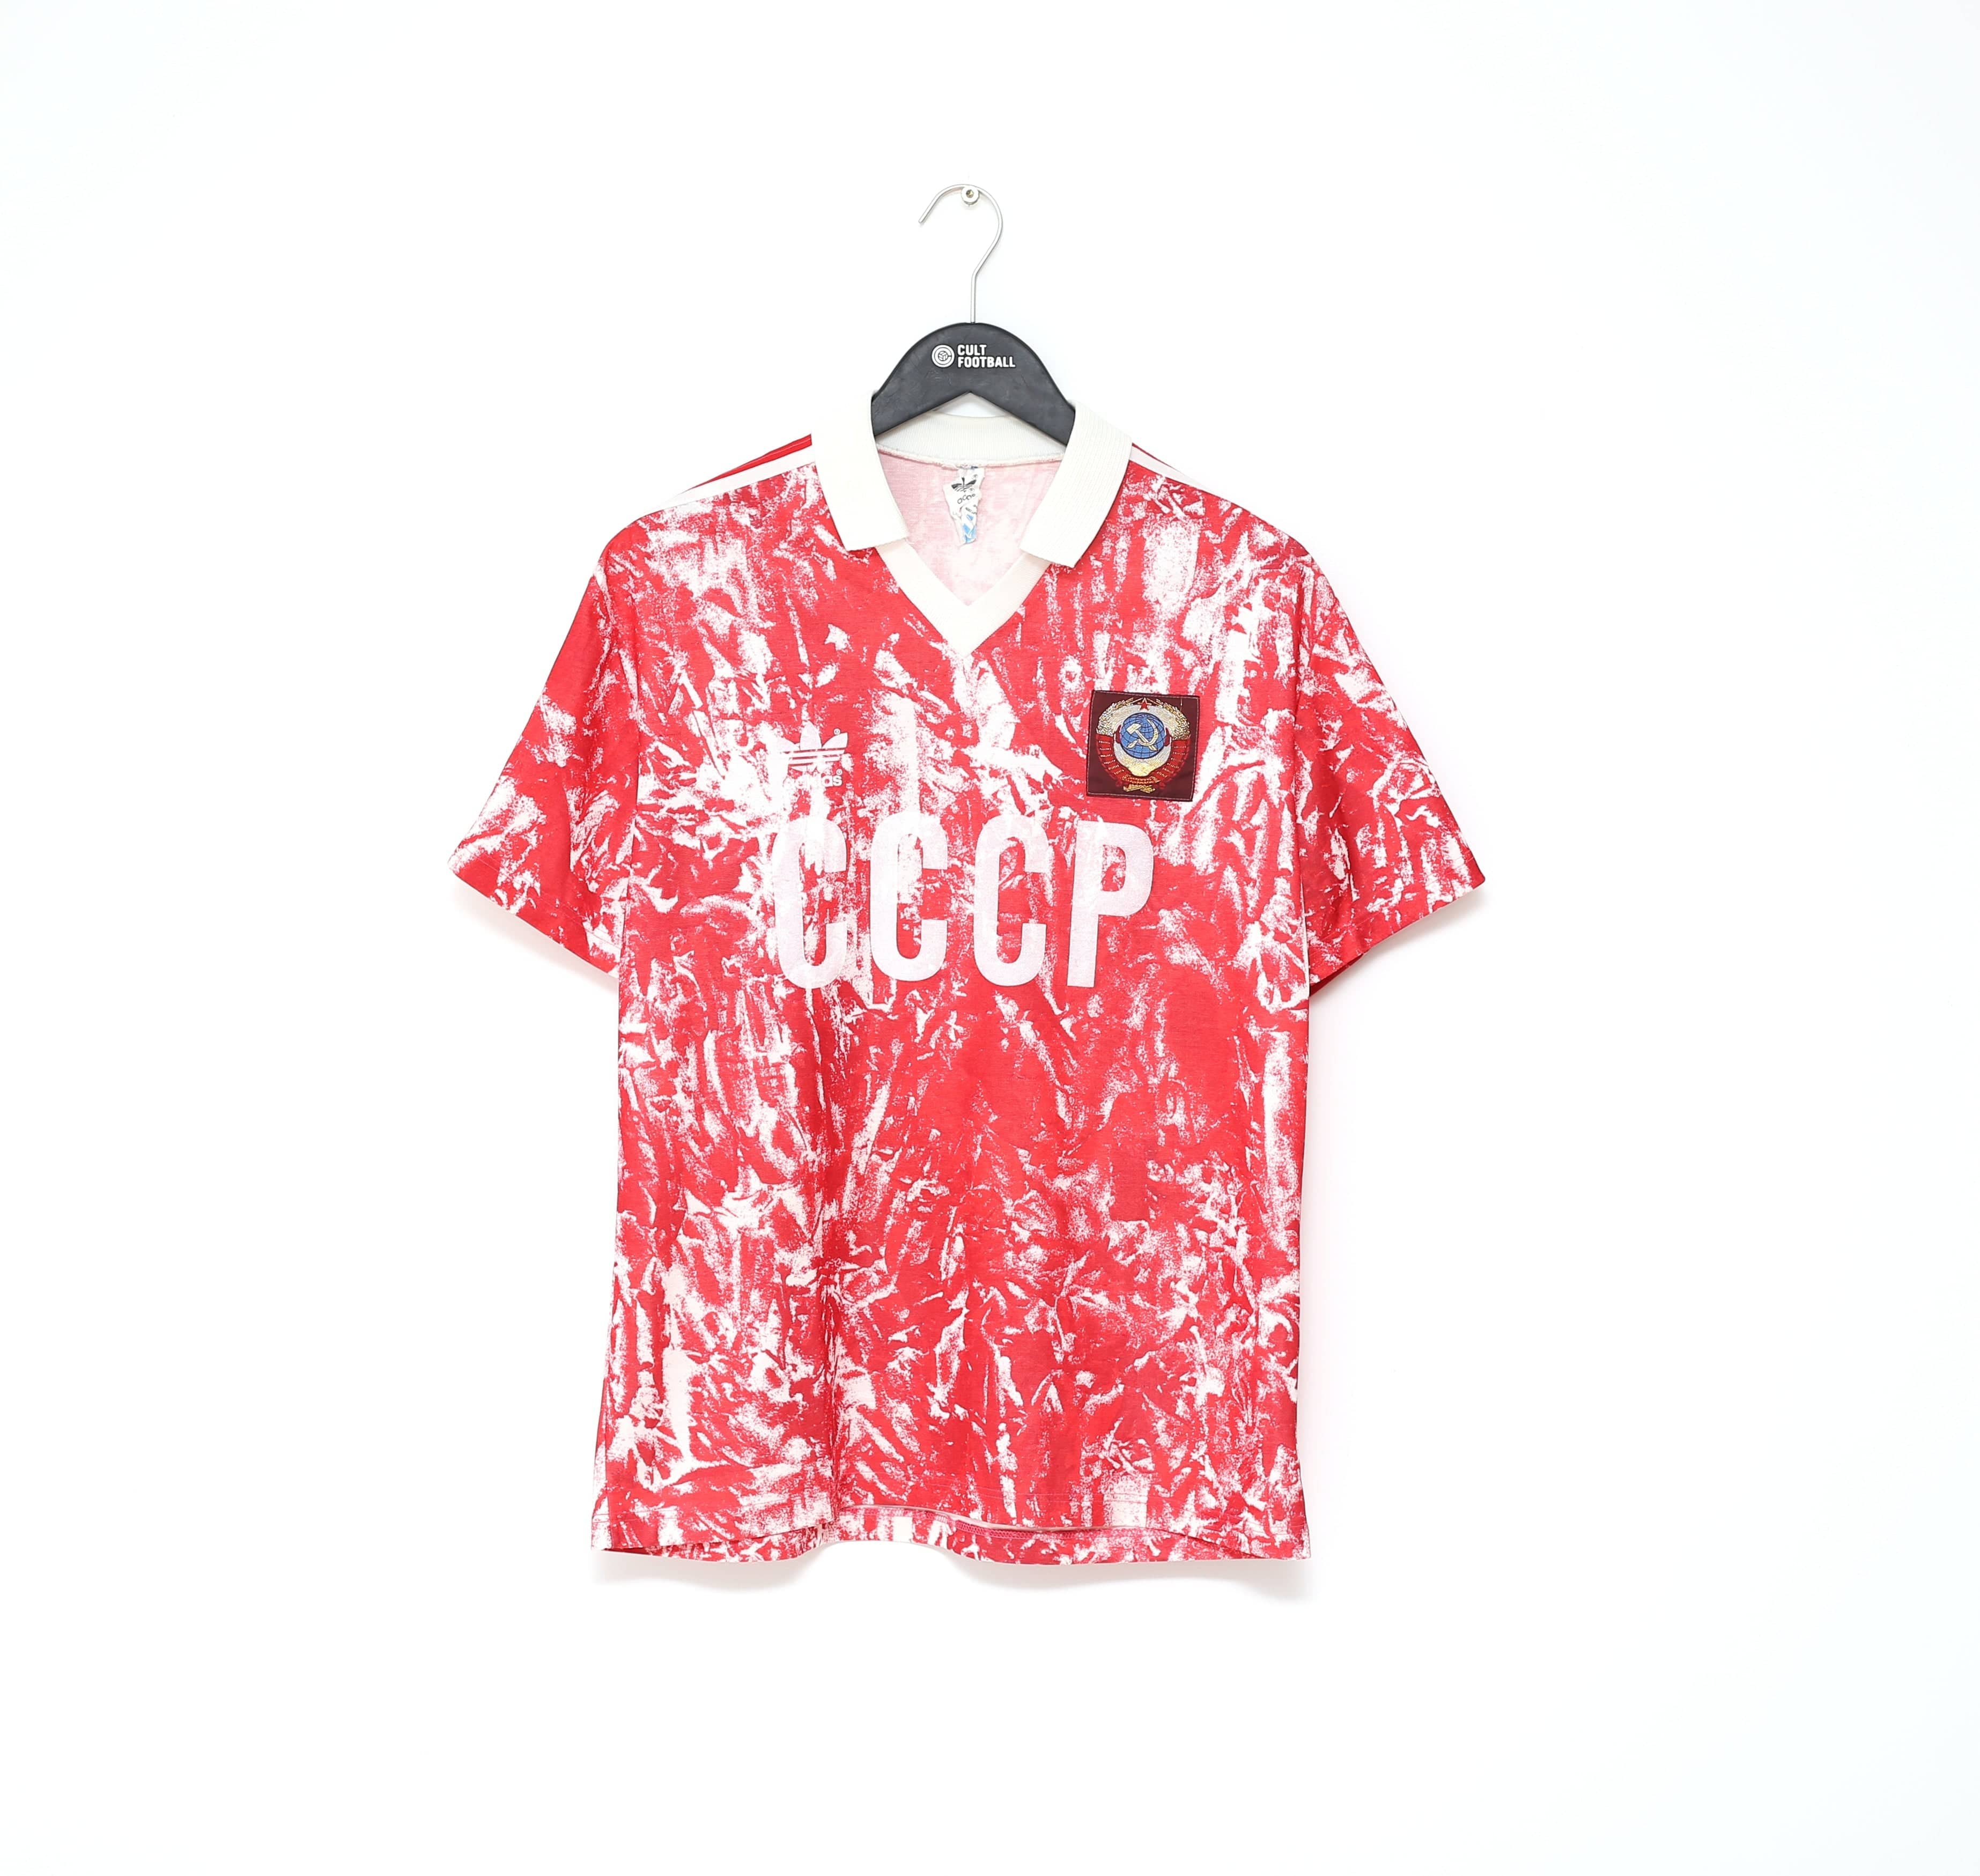 ussr football shirt 1989